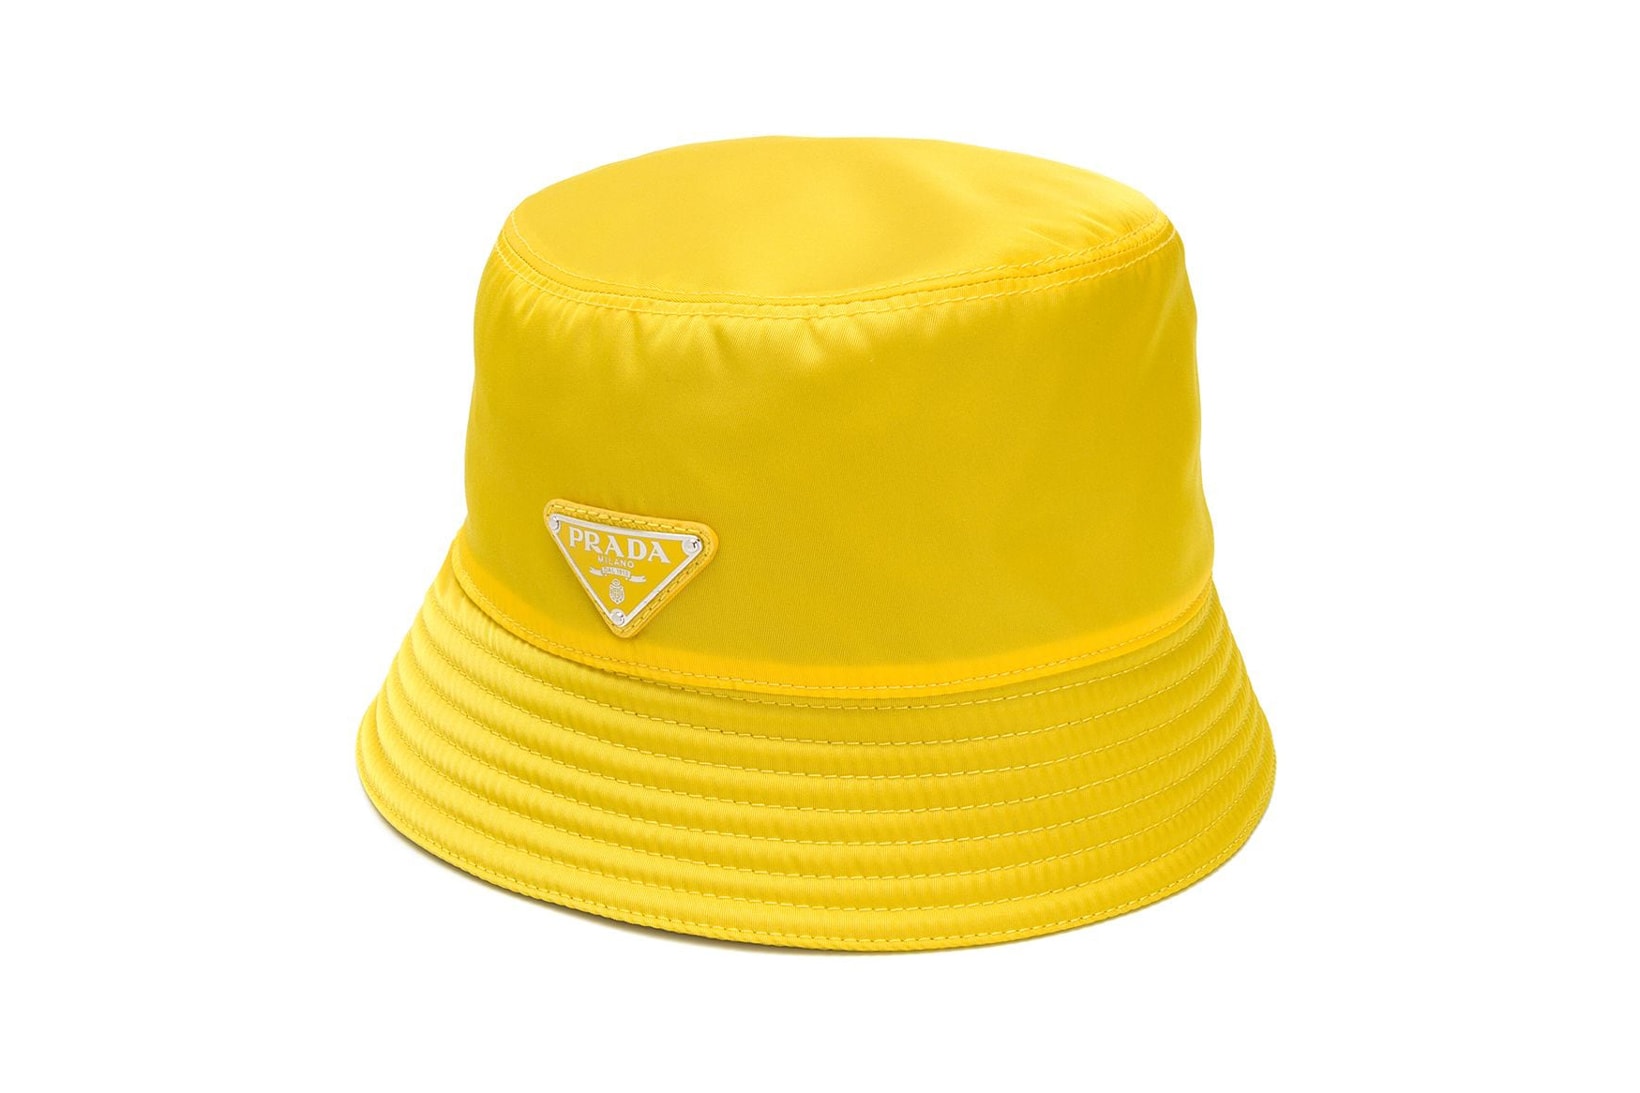 Prada Bucket Hat Yellow Stitch Detail